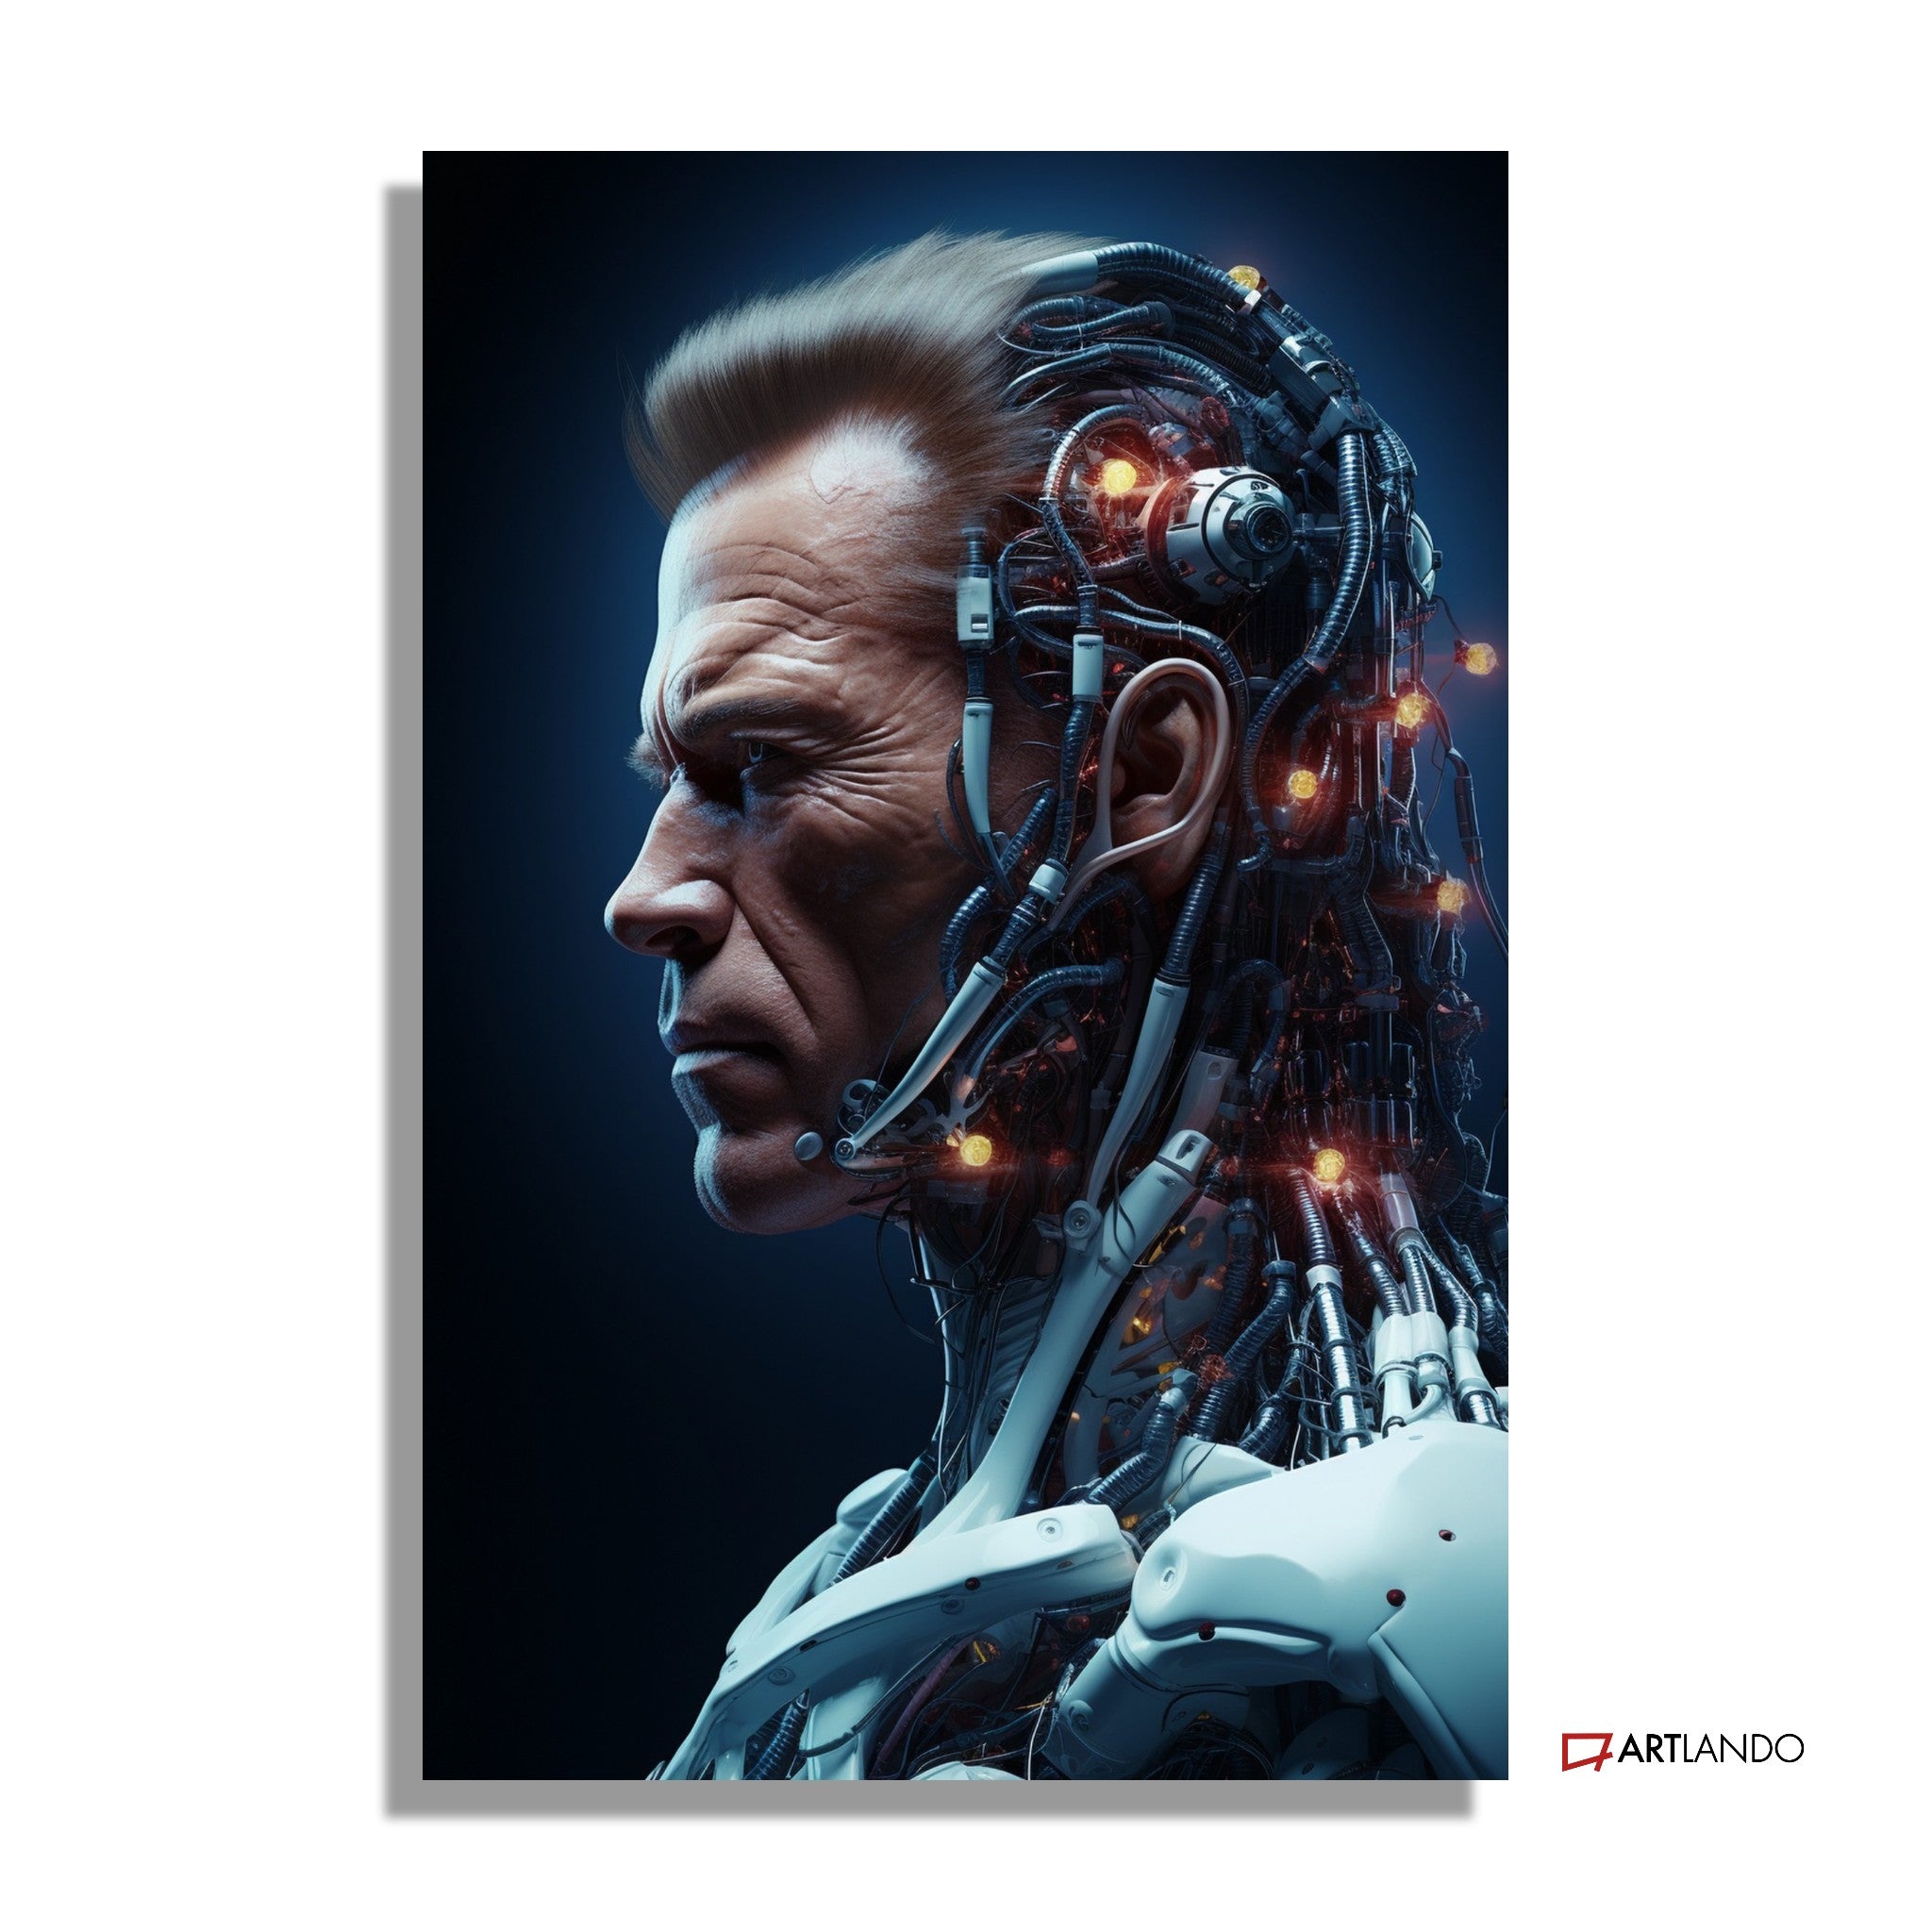 Profil von Arnold Schwarzenegger als Cyborg - Portrait Art